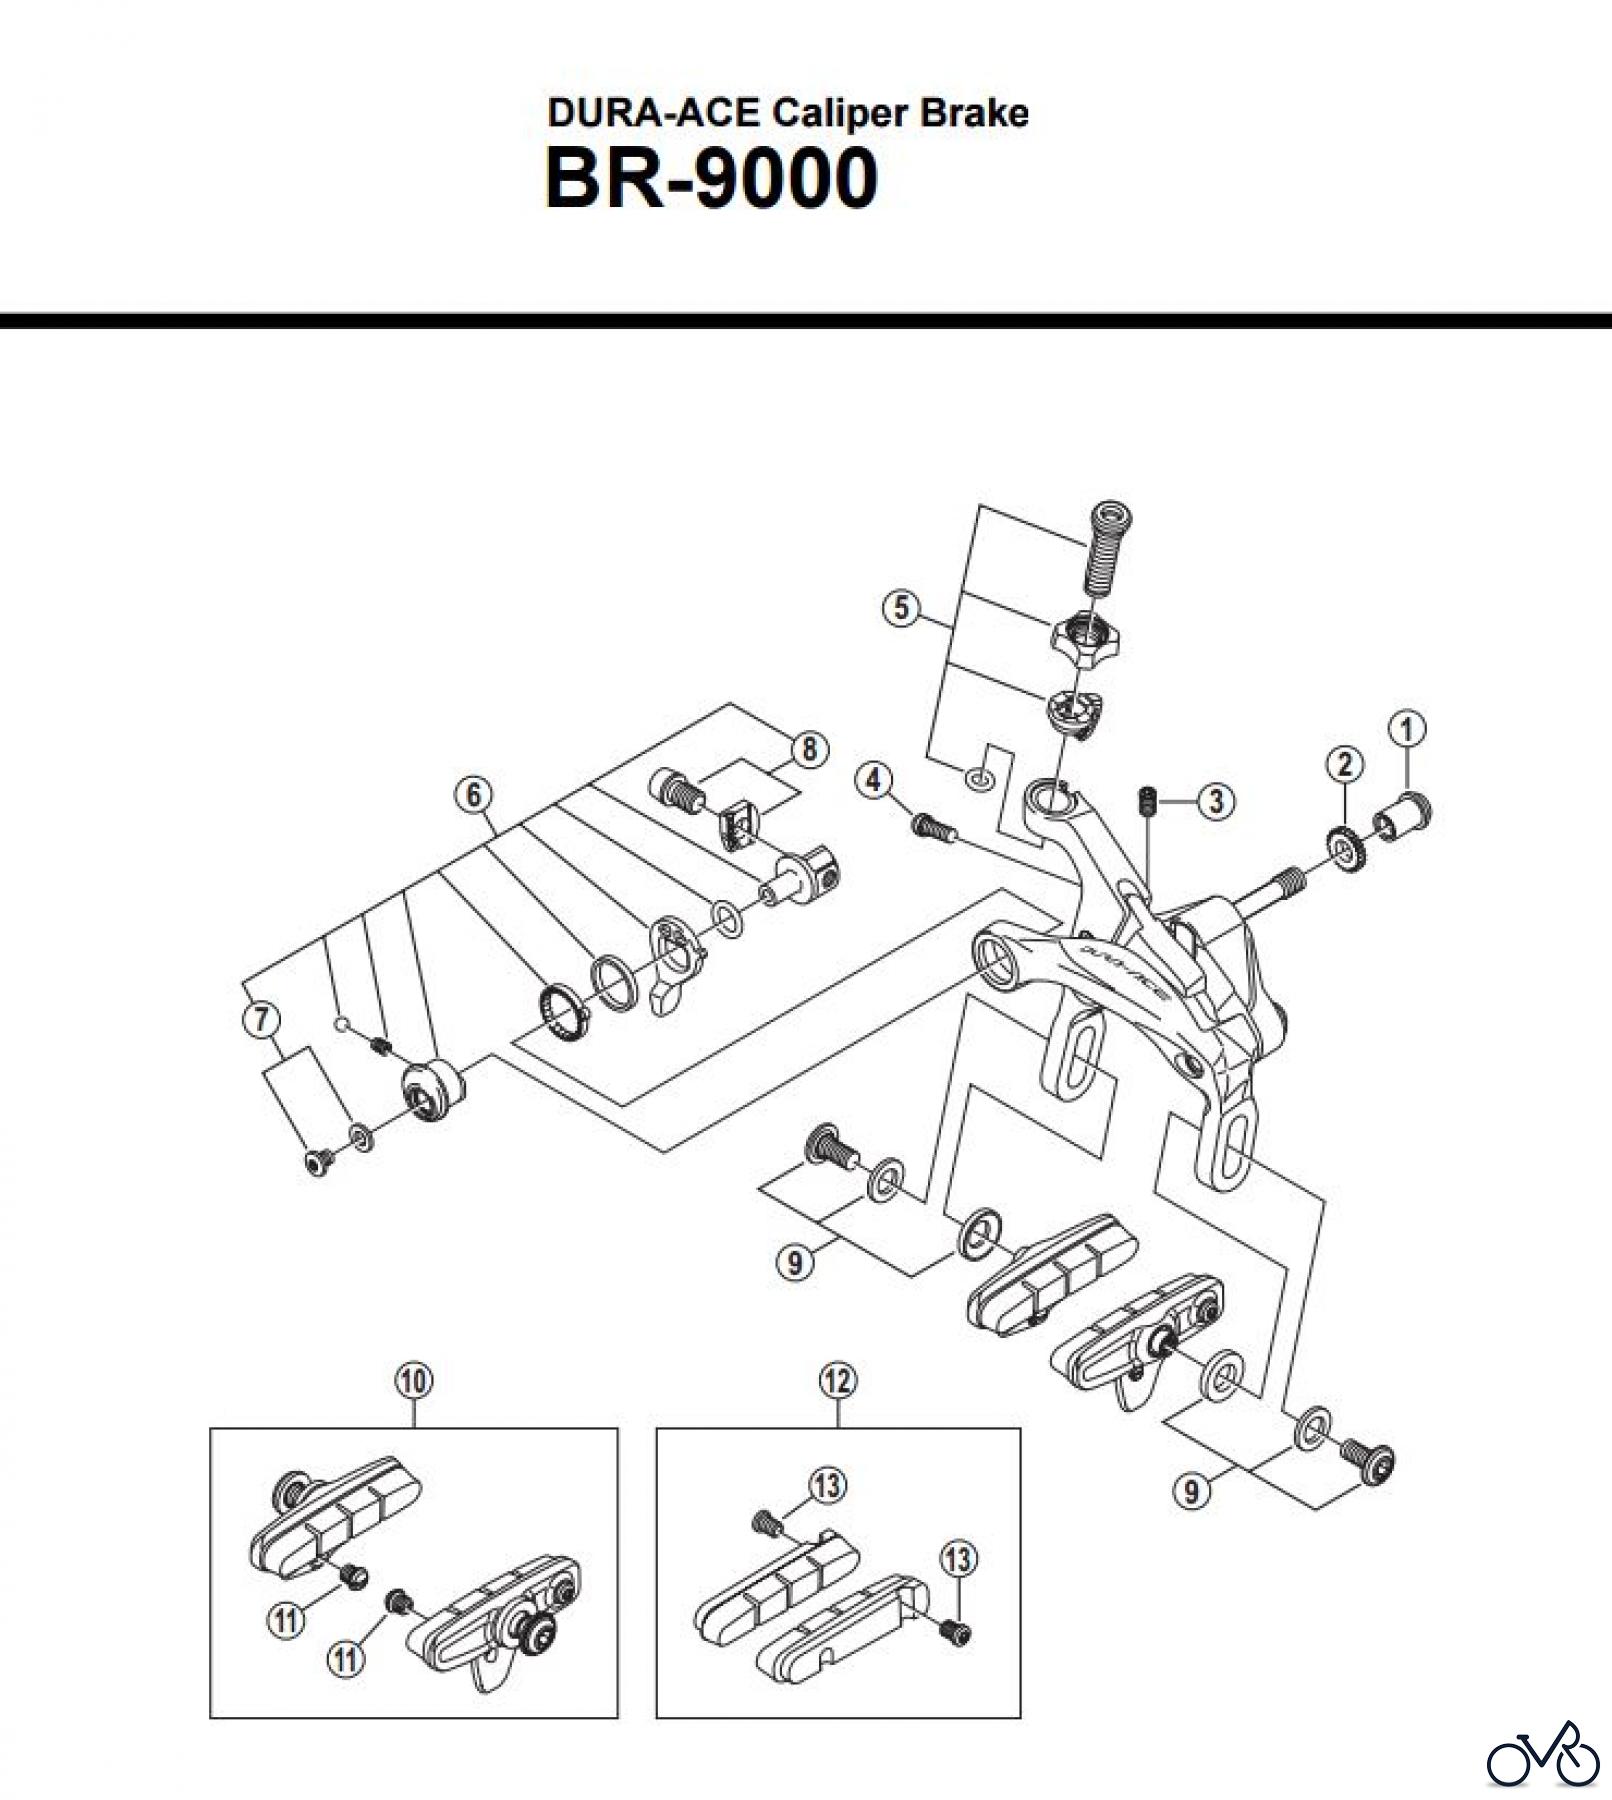  Shimano BR Brake - Bremse BR-9000 -3322 DURA-ACE Caliper Brake